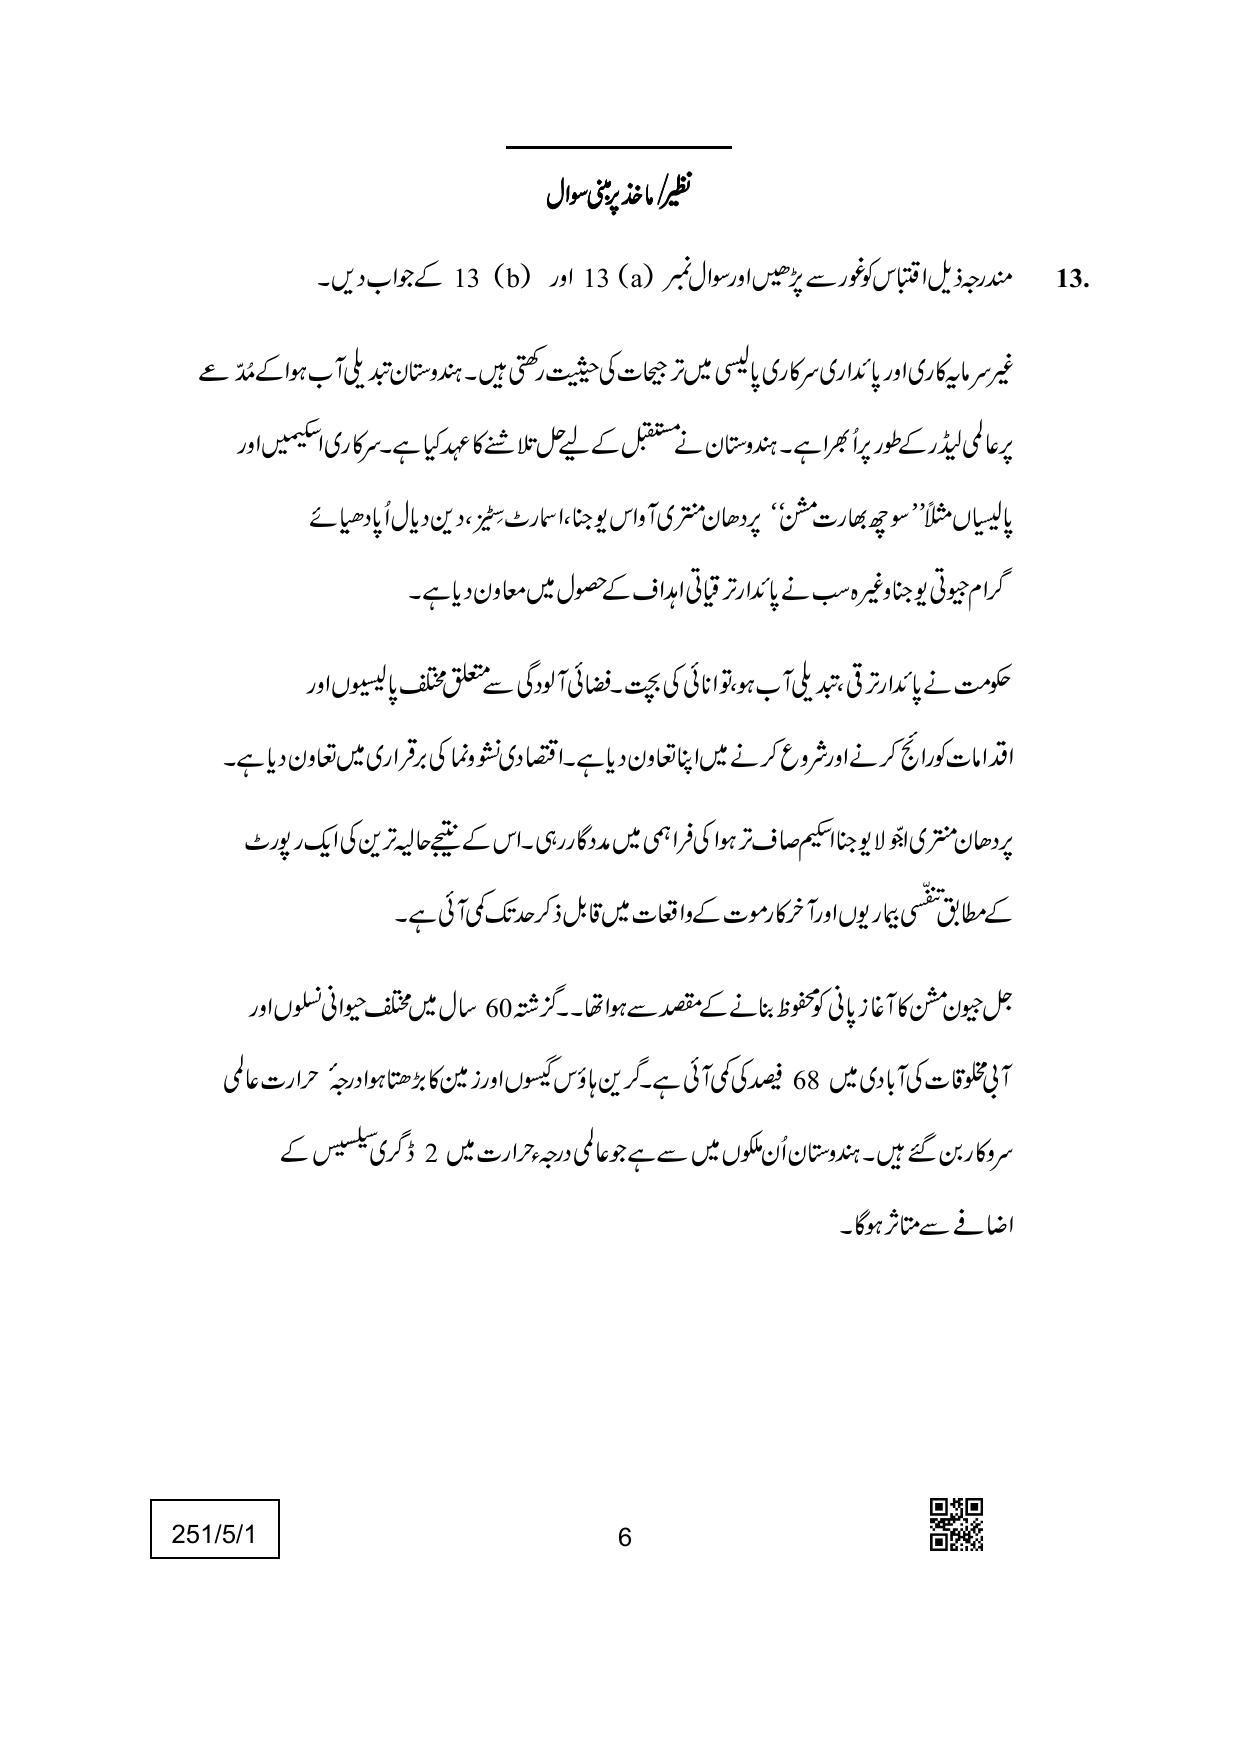 CBSE Class 12 251-5-1 (Economics) Urdu Version 2022 Question Paper - Page 6